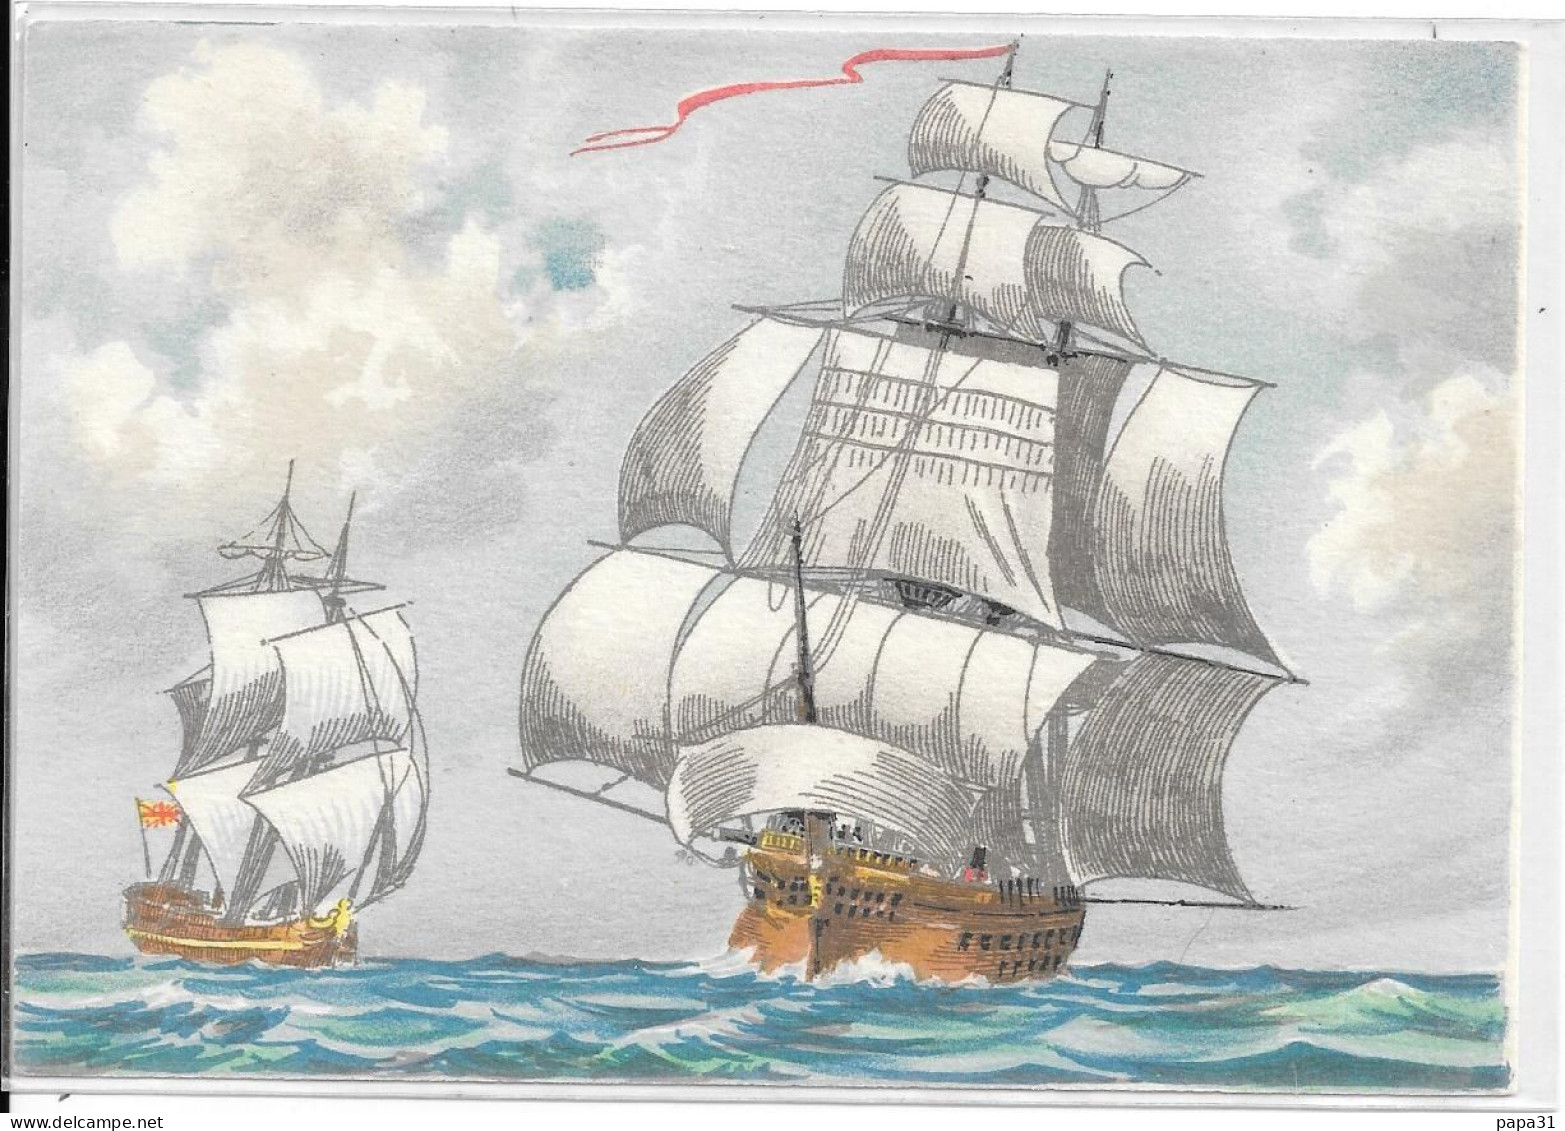 VOILIER : LE TRITON   -  BARRE DAYEZ N° 1161 D - Sailing Vessels